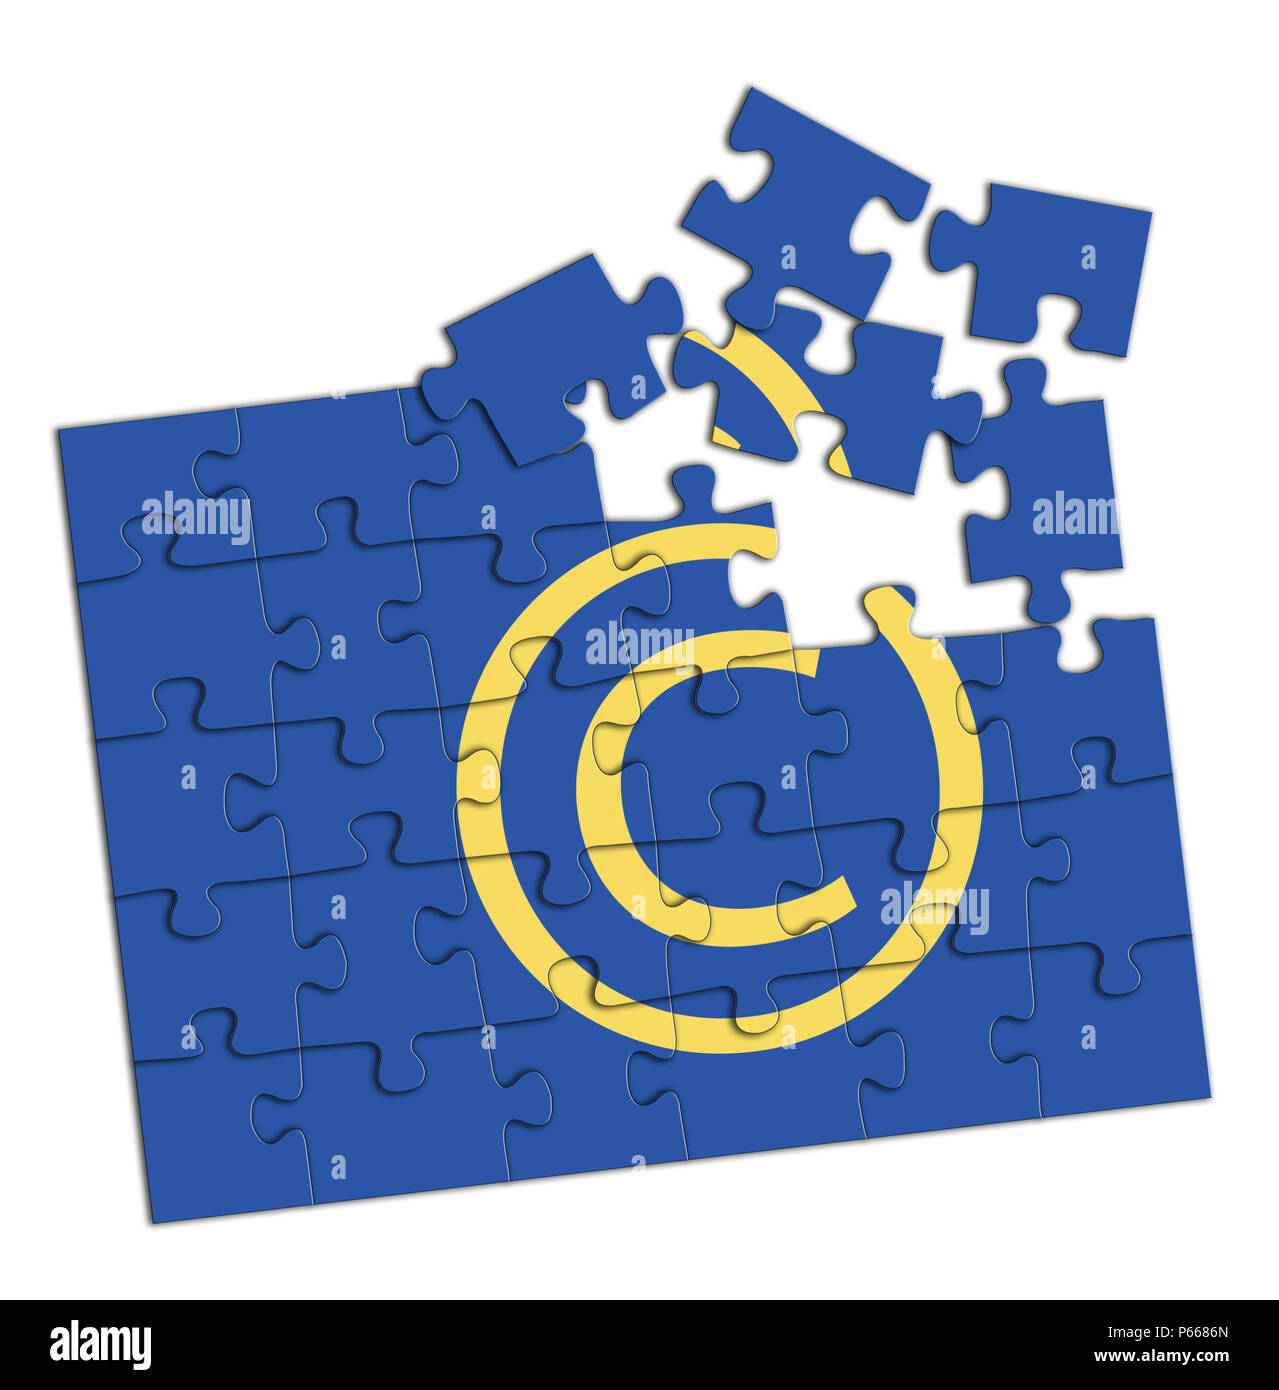 Nouvelle directive de l'UE le droit d'auteur. Concept. Arrière-plan blanc. Banque D'Images